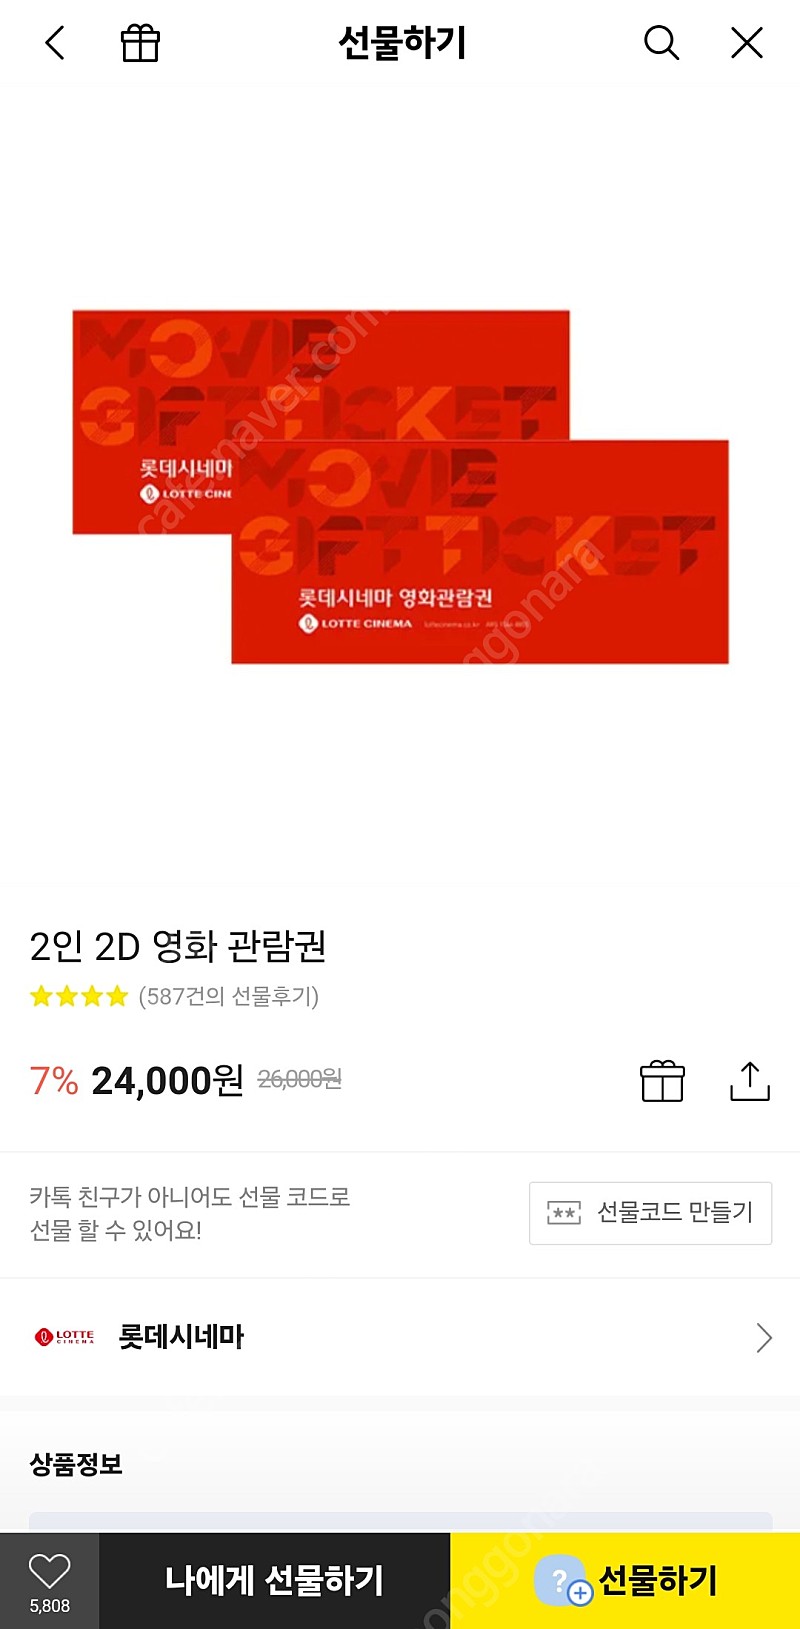 롯데시네마 2D 영화관람권 2매 판매 (직접 예매)